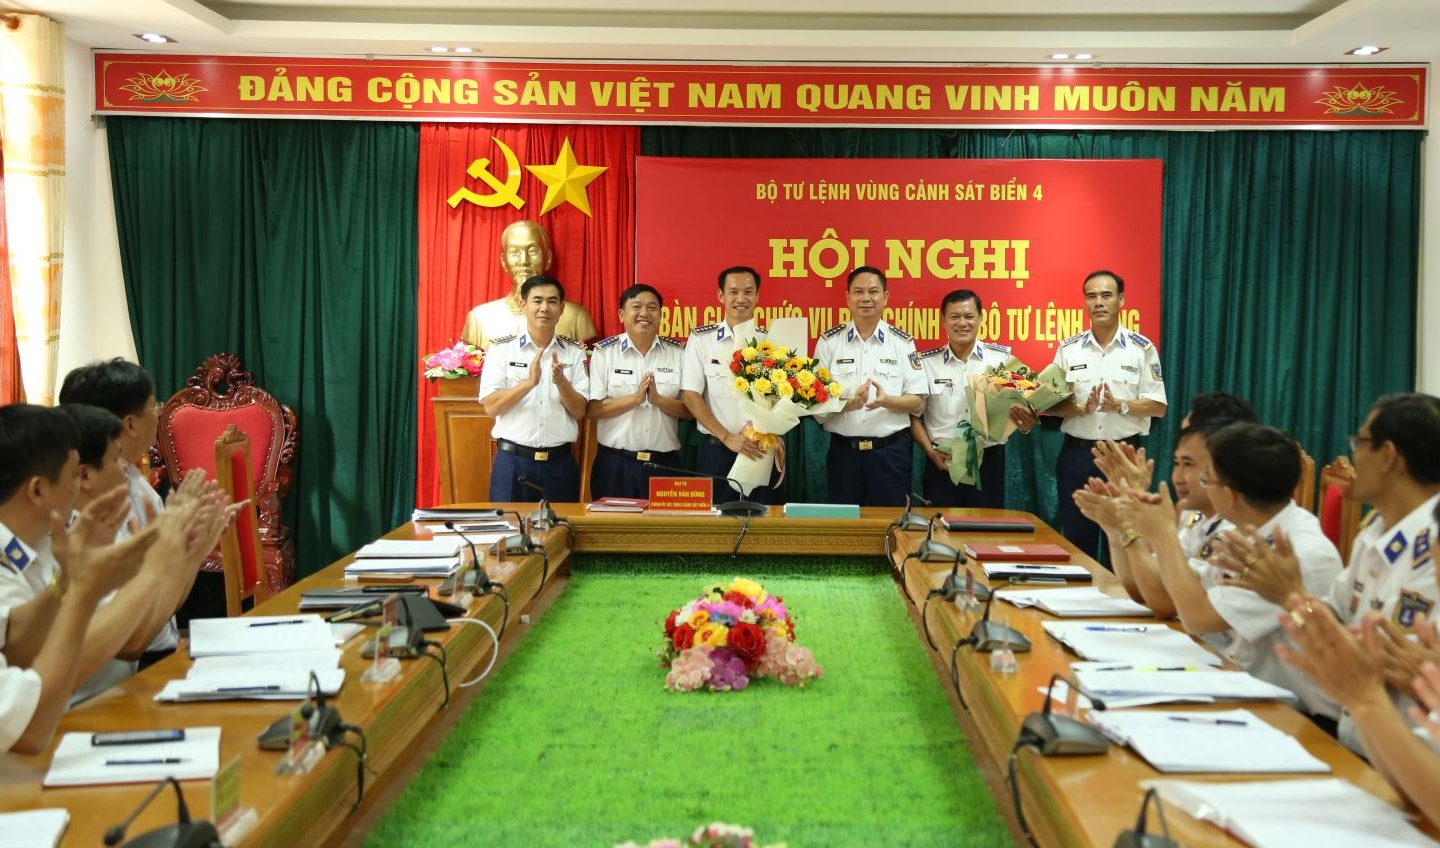 Đại tá Nguyễn Văn Dũng, Bí thư Đảng ủy, Chính ủy BTL Vùng Cảnh sát biển 4 tặng hoa chúc mừng 2 đồng chí tại Hội nghị bàn giao.